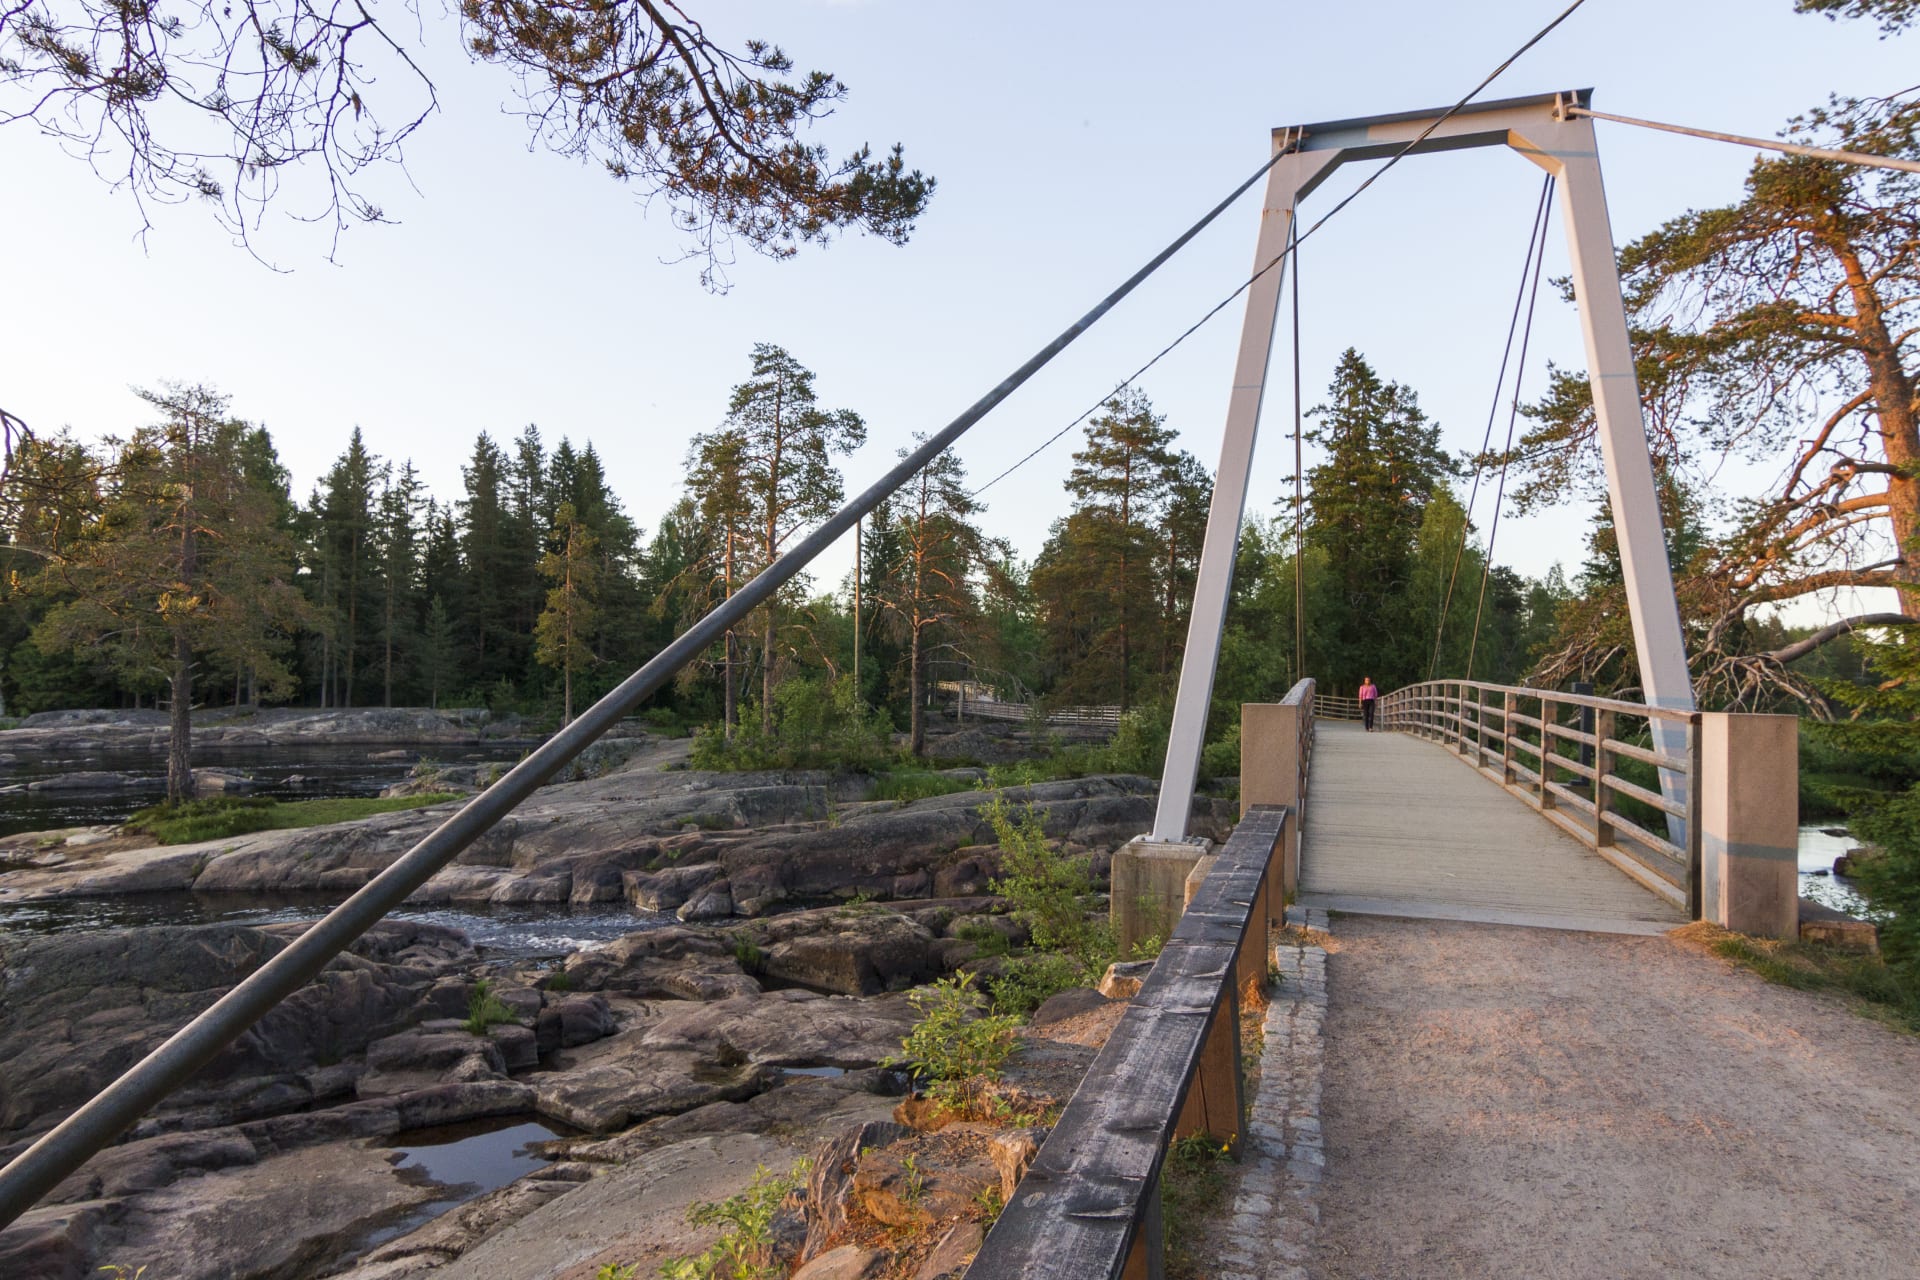 Sahasaari island in Koitelinkoski is reached via a suspension bridge.